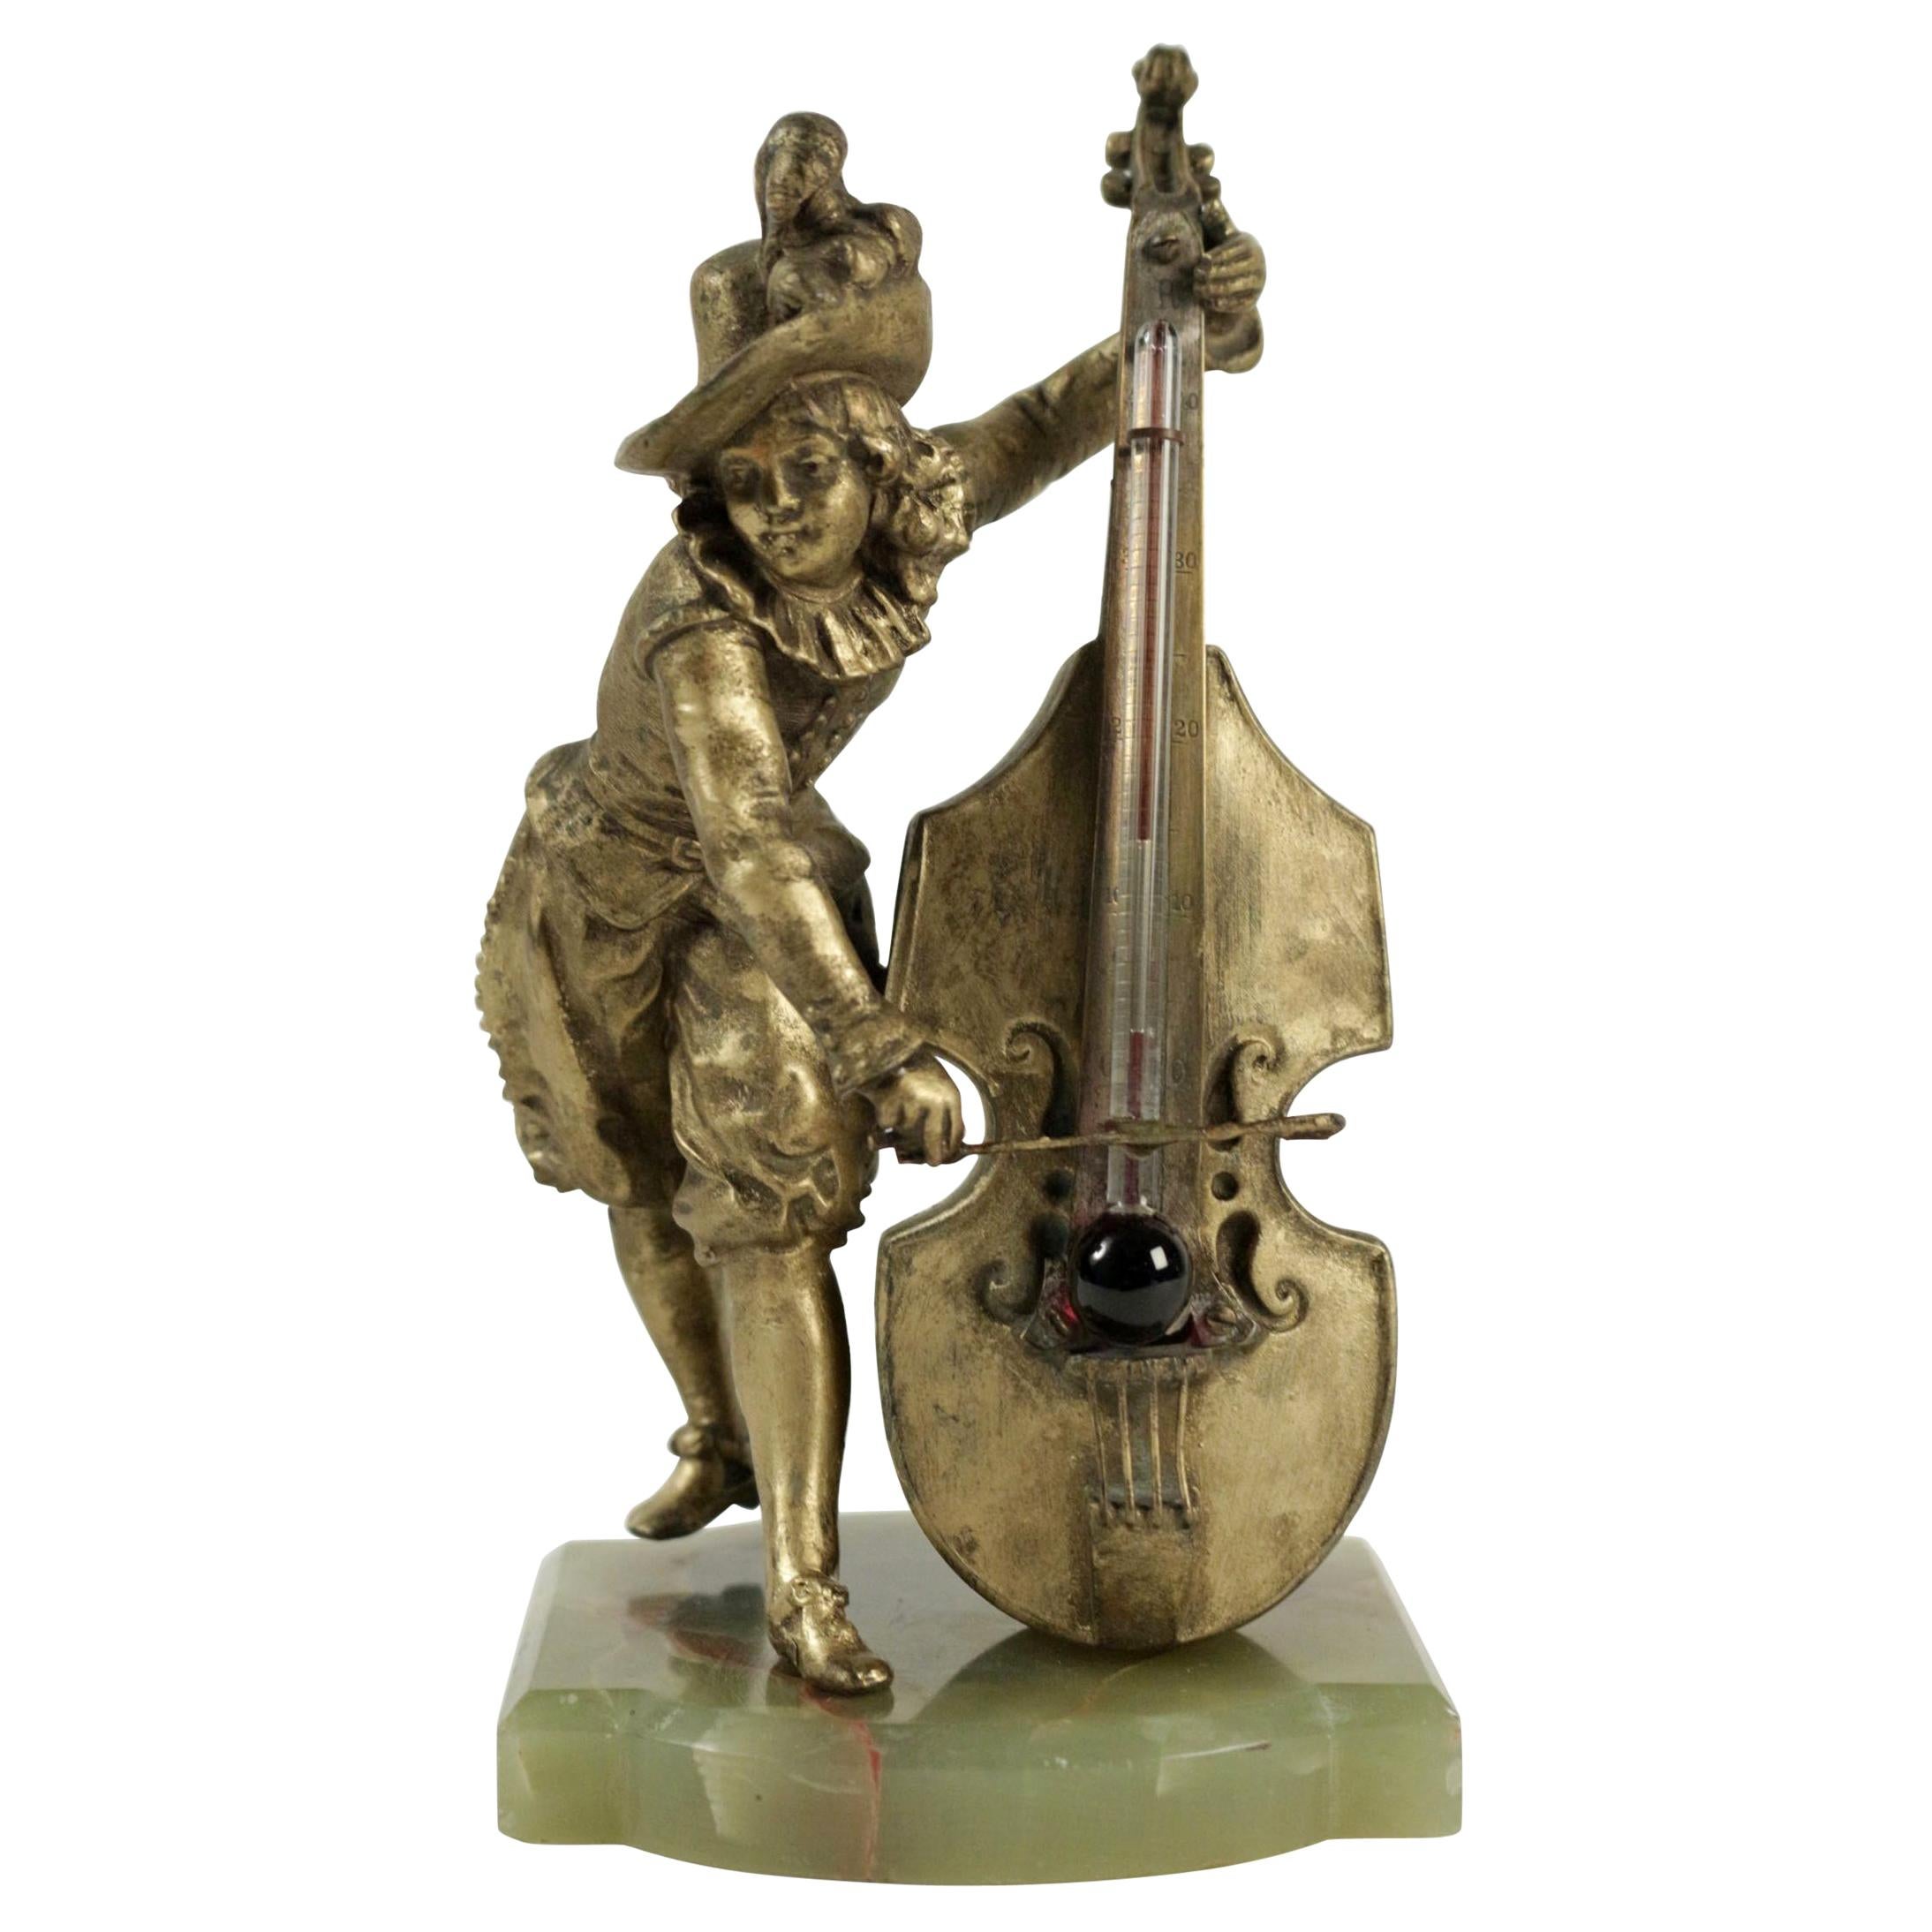 Barometer Regulates and Base in Semi-Precious Stone Representing a Cello Player